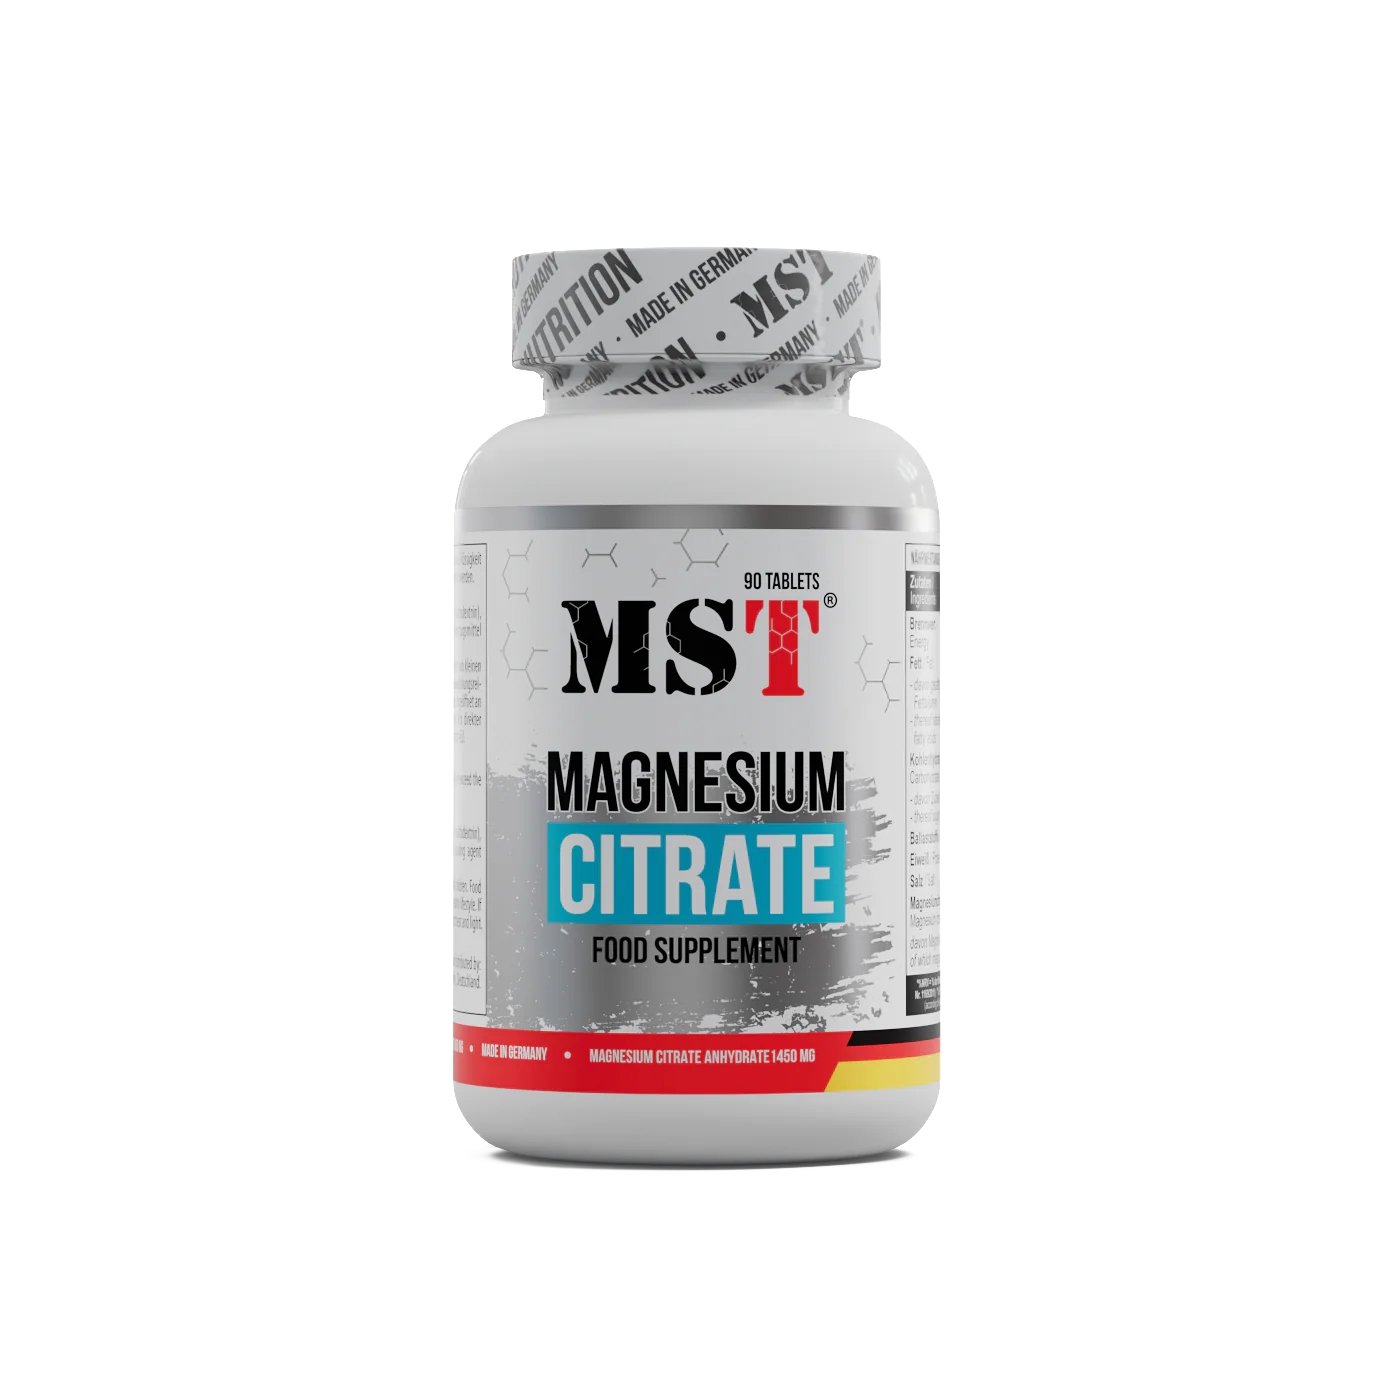 Витамины и минералы MST Magnesium Citrate 200 mg, 90 таблеток,  мл, MST Nutrition. Витамины и минералы. Поддержание здоровья Укрепление иммунитета 